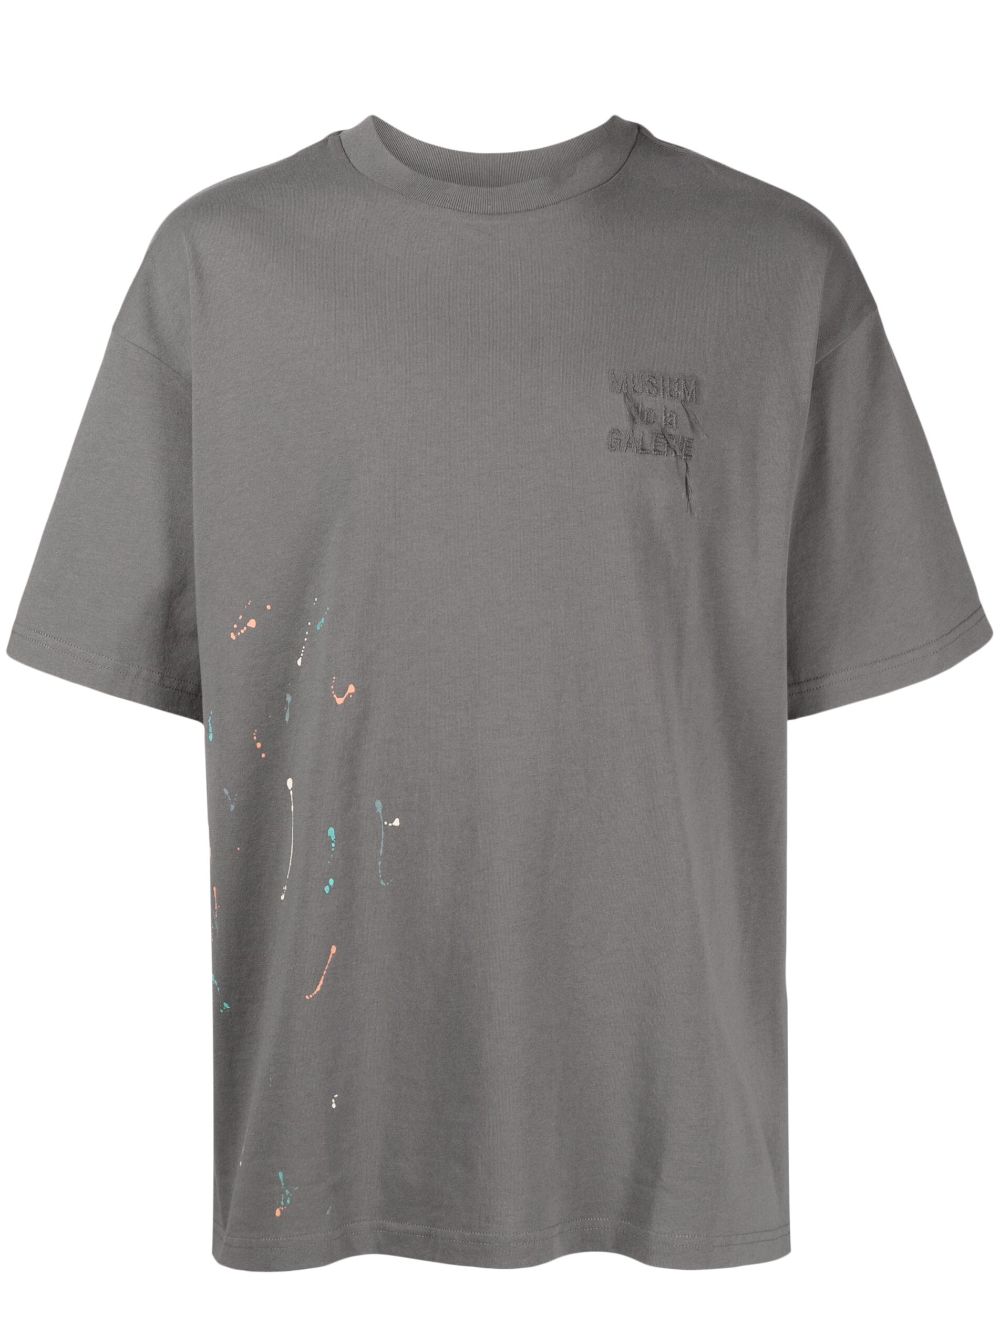 Musium Div. T-Shirt mit Farbklecks-Print - Grau von Musium Div.